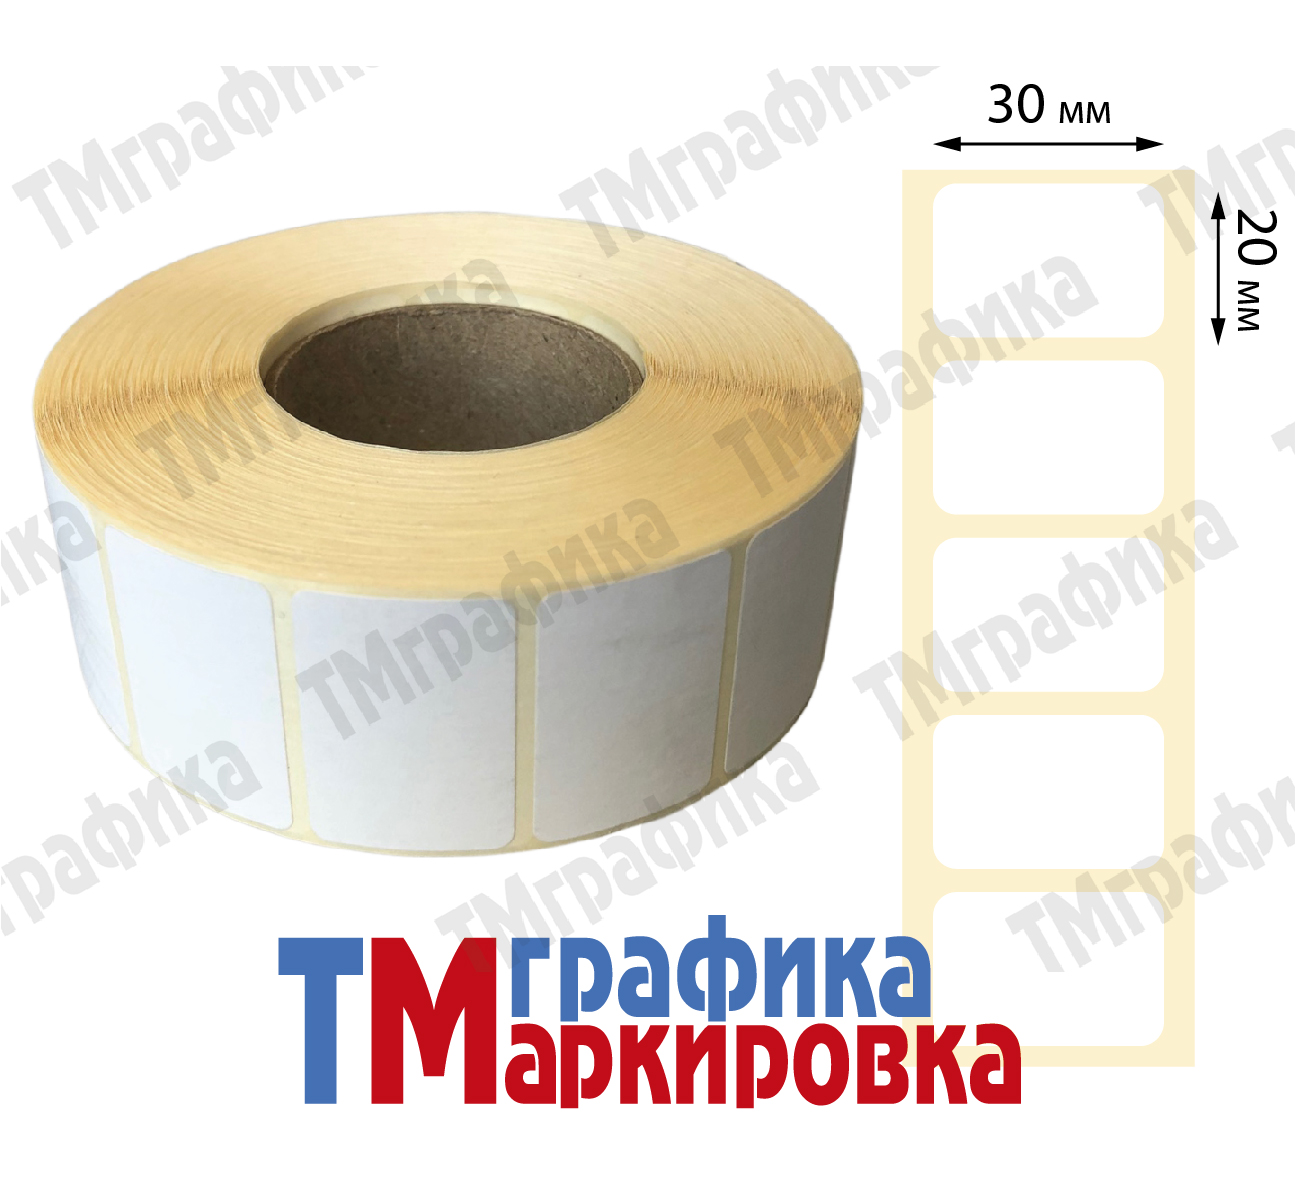 30х20 мм, 2000 шт. Термоэтикетки Эко - 142.80 руб.